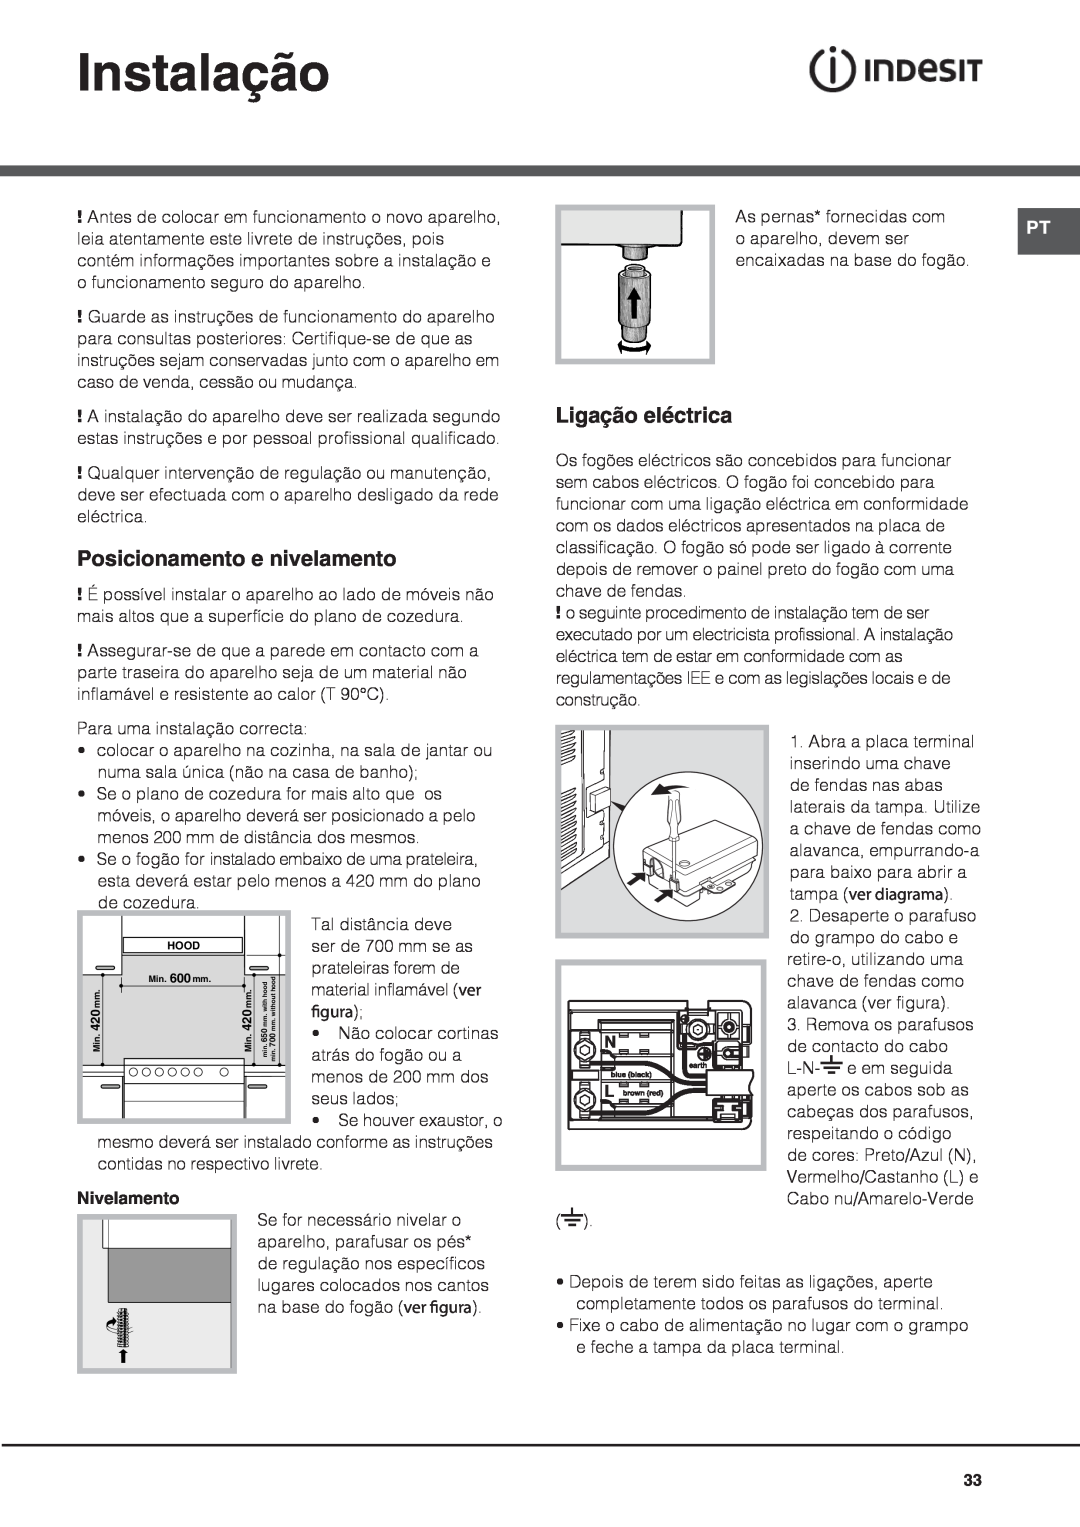 Indesit I6VV2A manual Instalação, Posicionamento e nivelamento, Ligação eléctrica, Nivelamento 